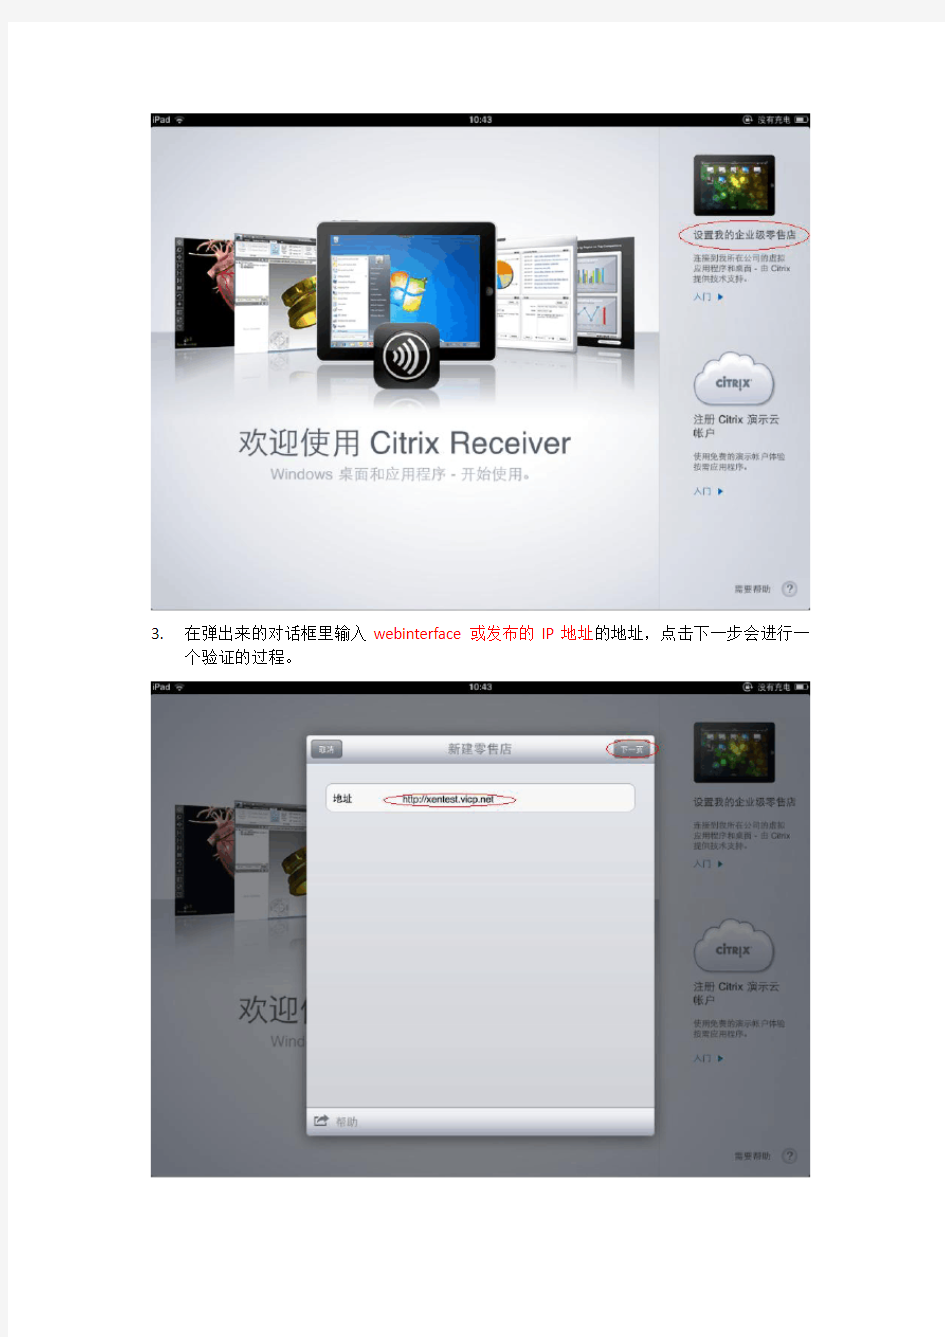 iPad上配置Citrix Receiver